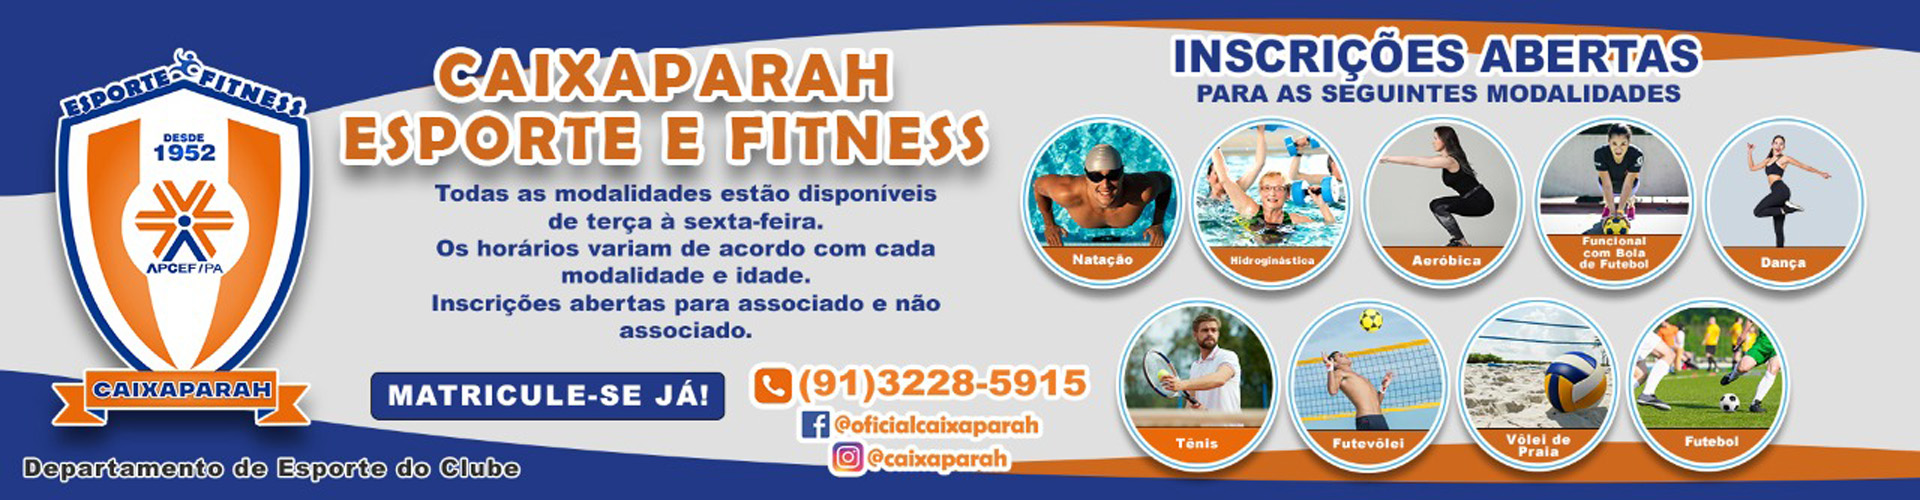 Caixaparah Esporte Fitness.jpg